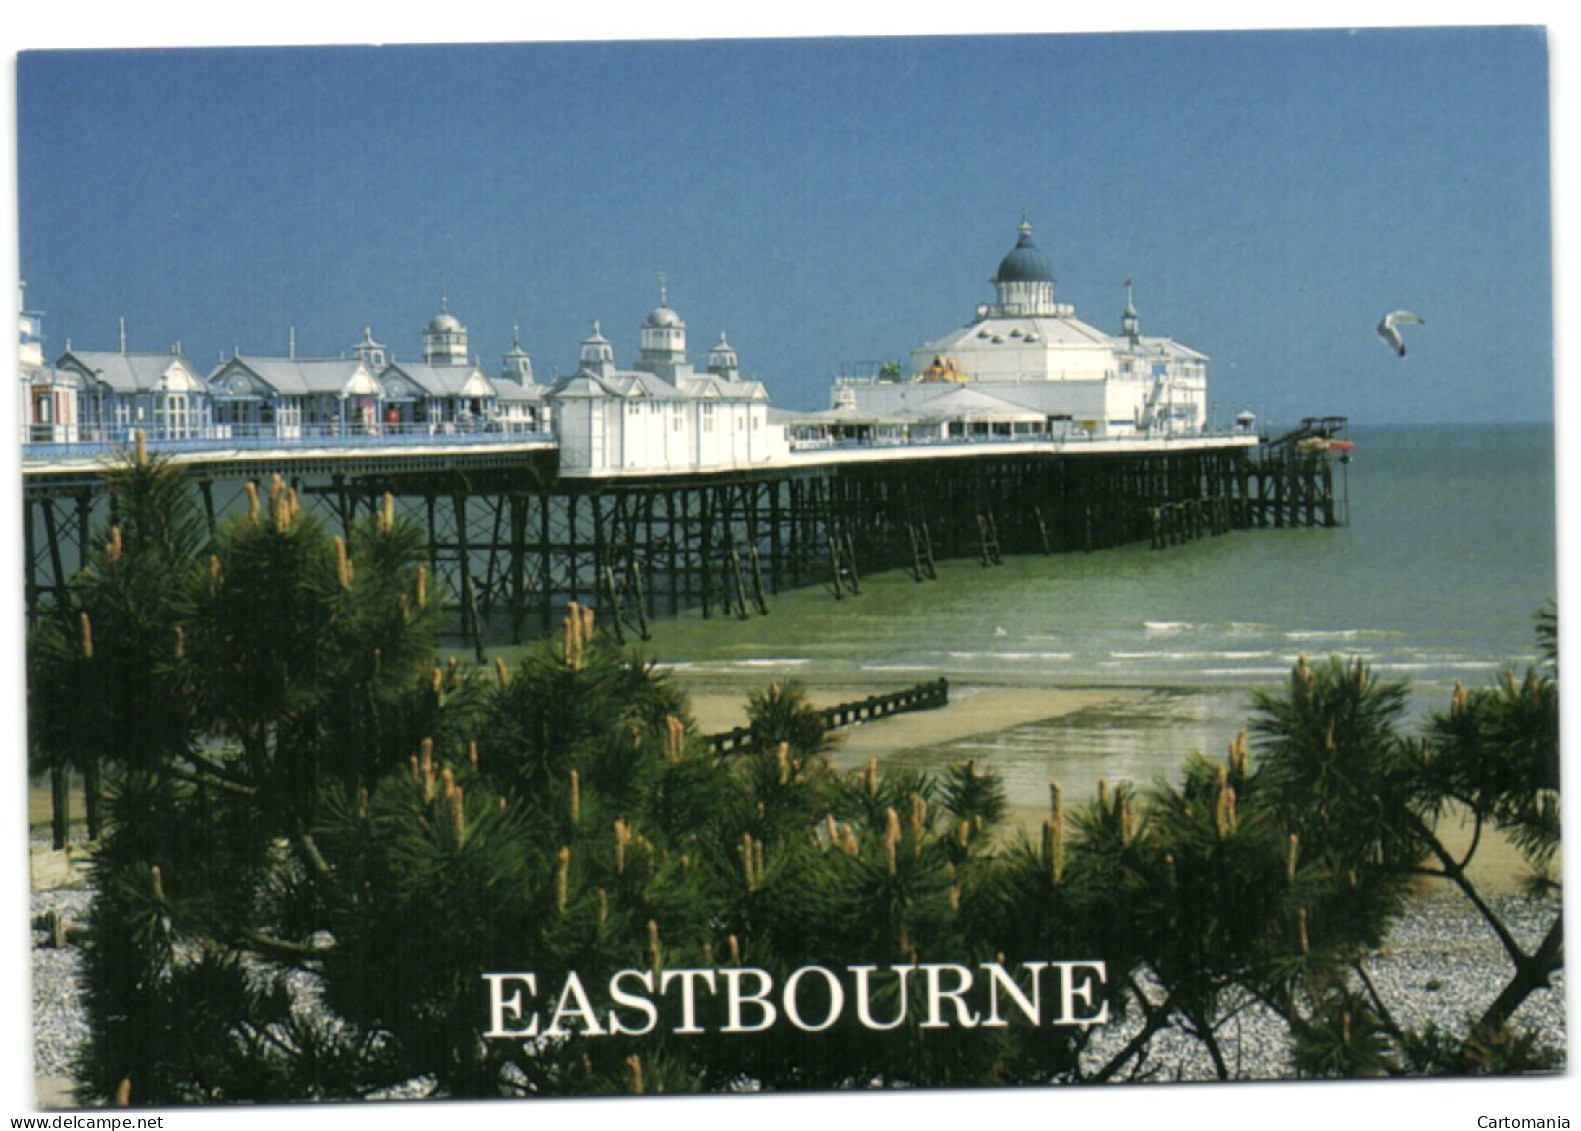 Eastbourne - The Pier - Eastbourne